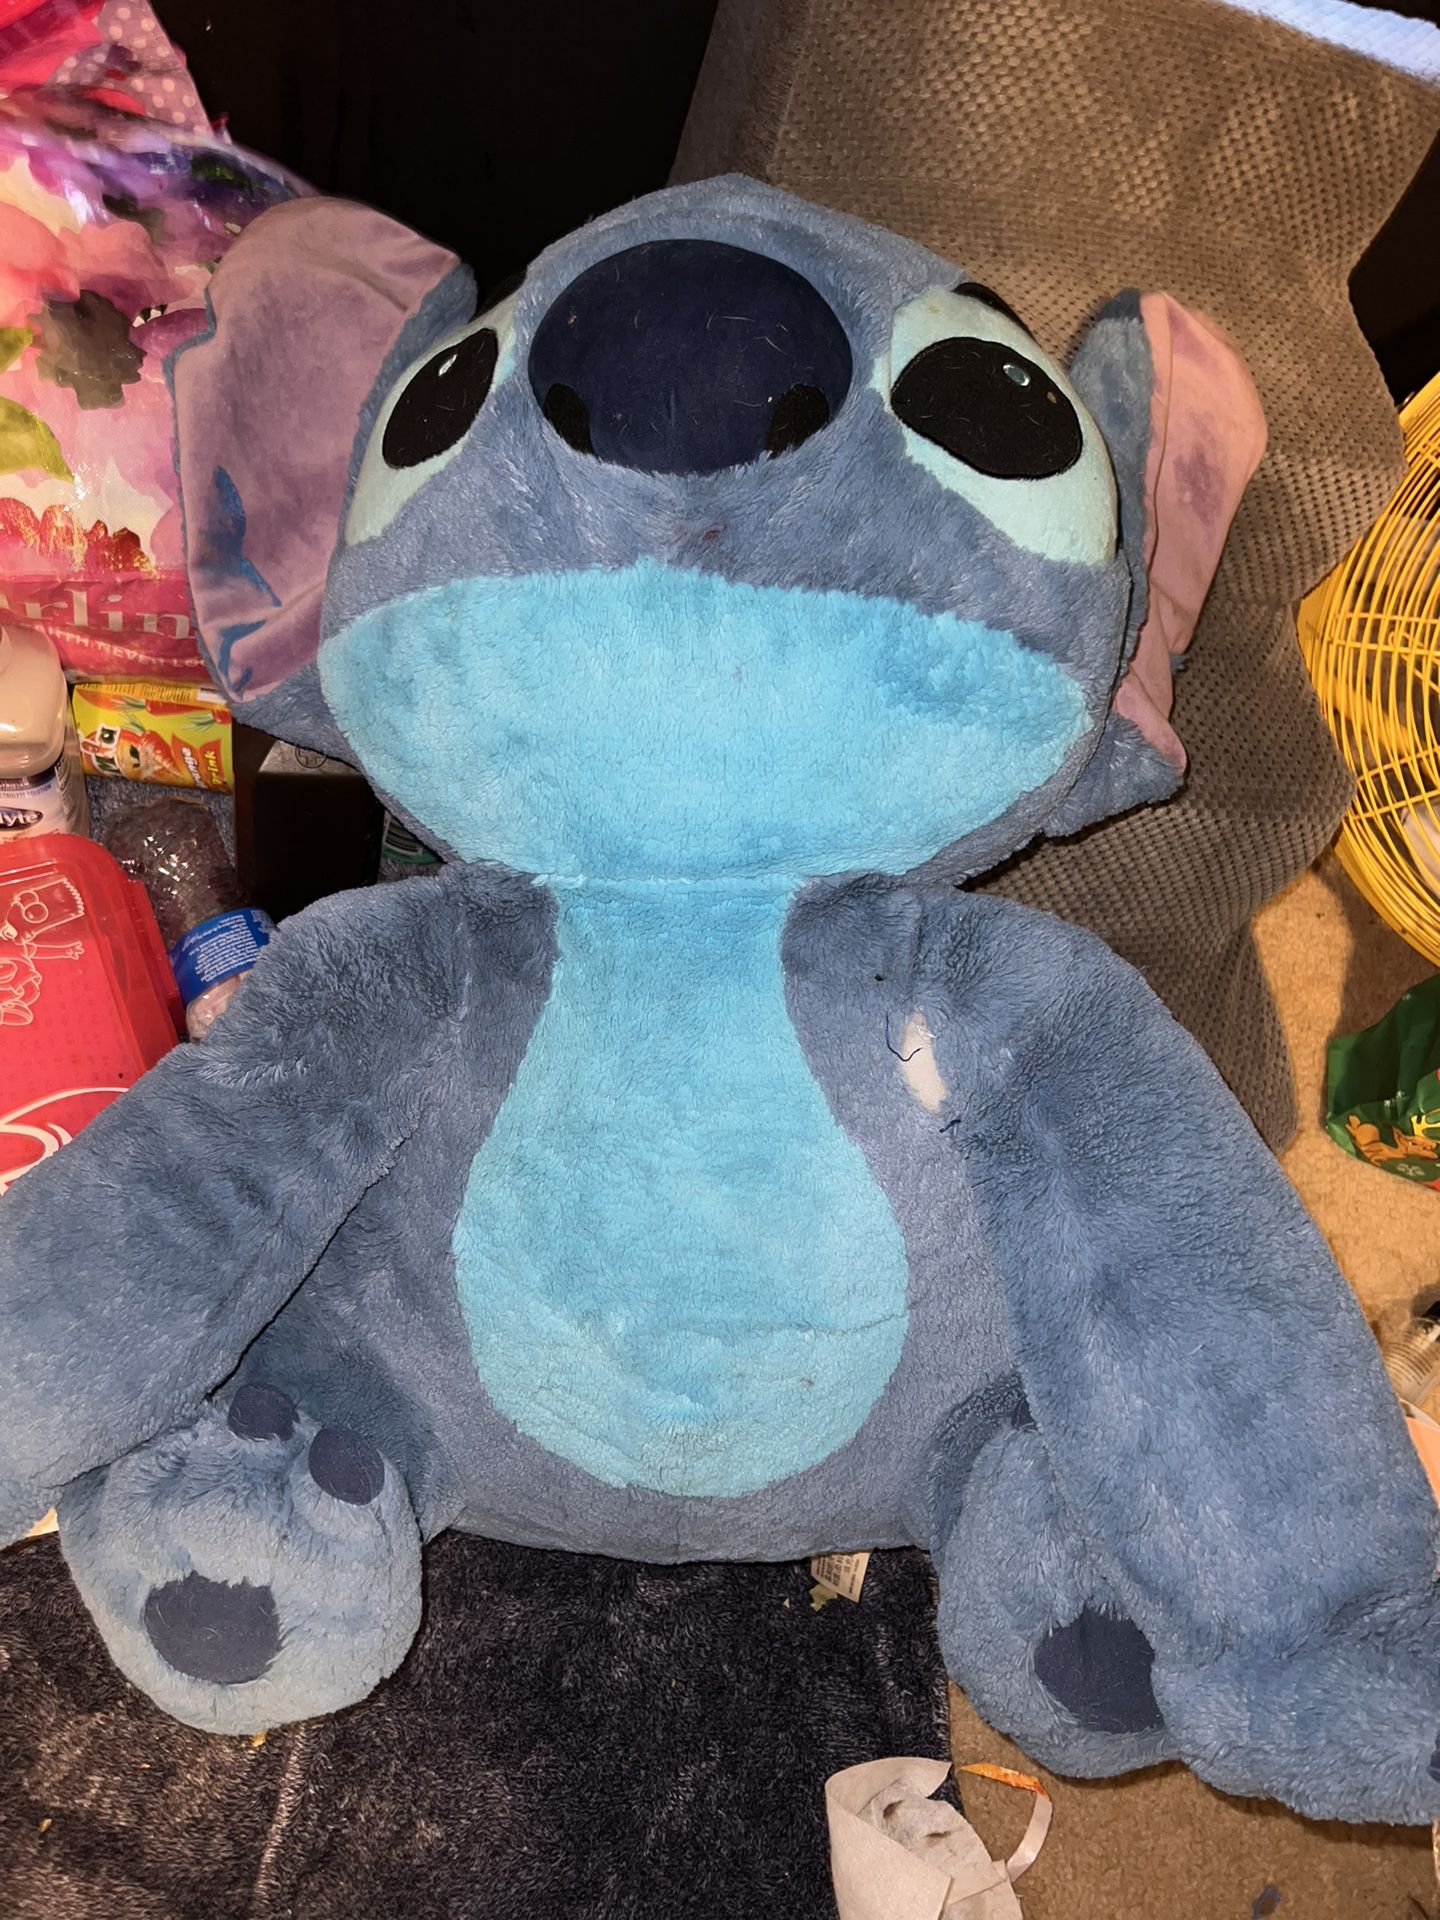 Big Ass Stitch Teddy Bear That I Got At Disneyland Lol